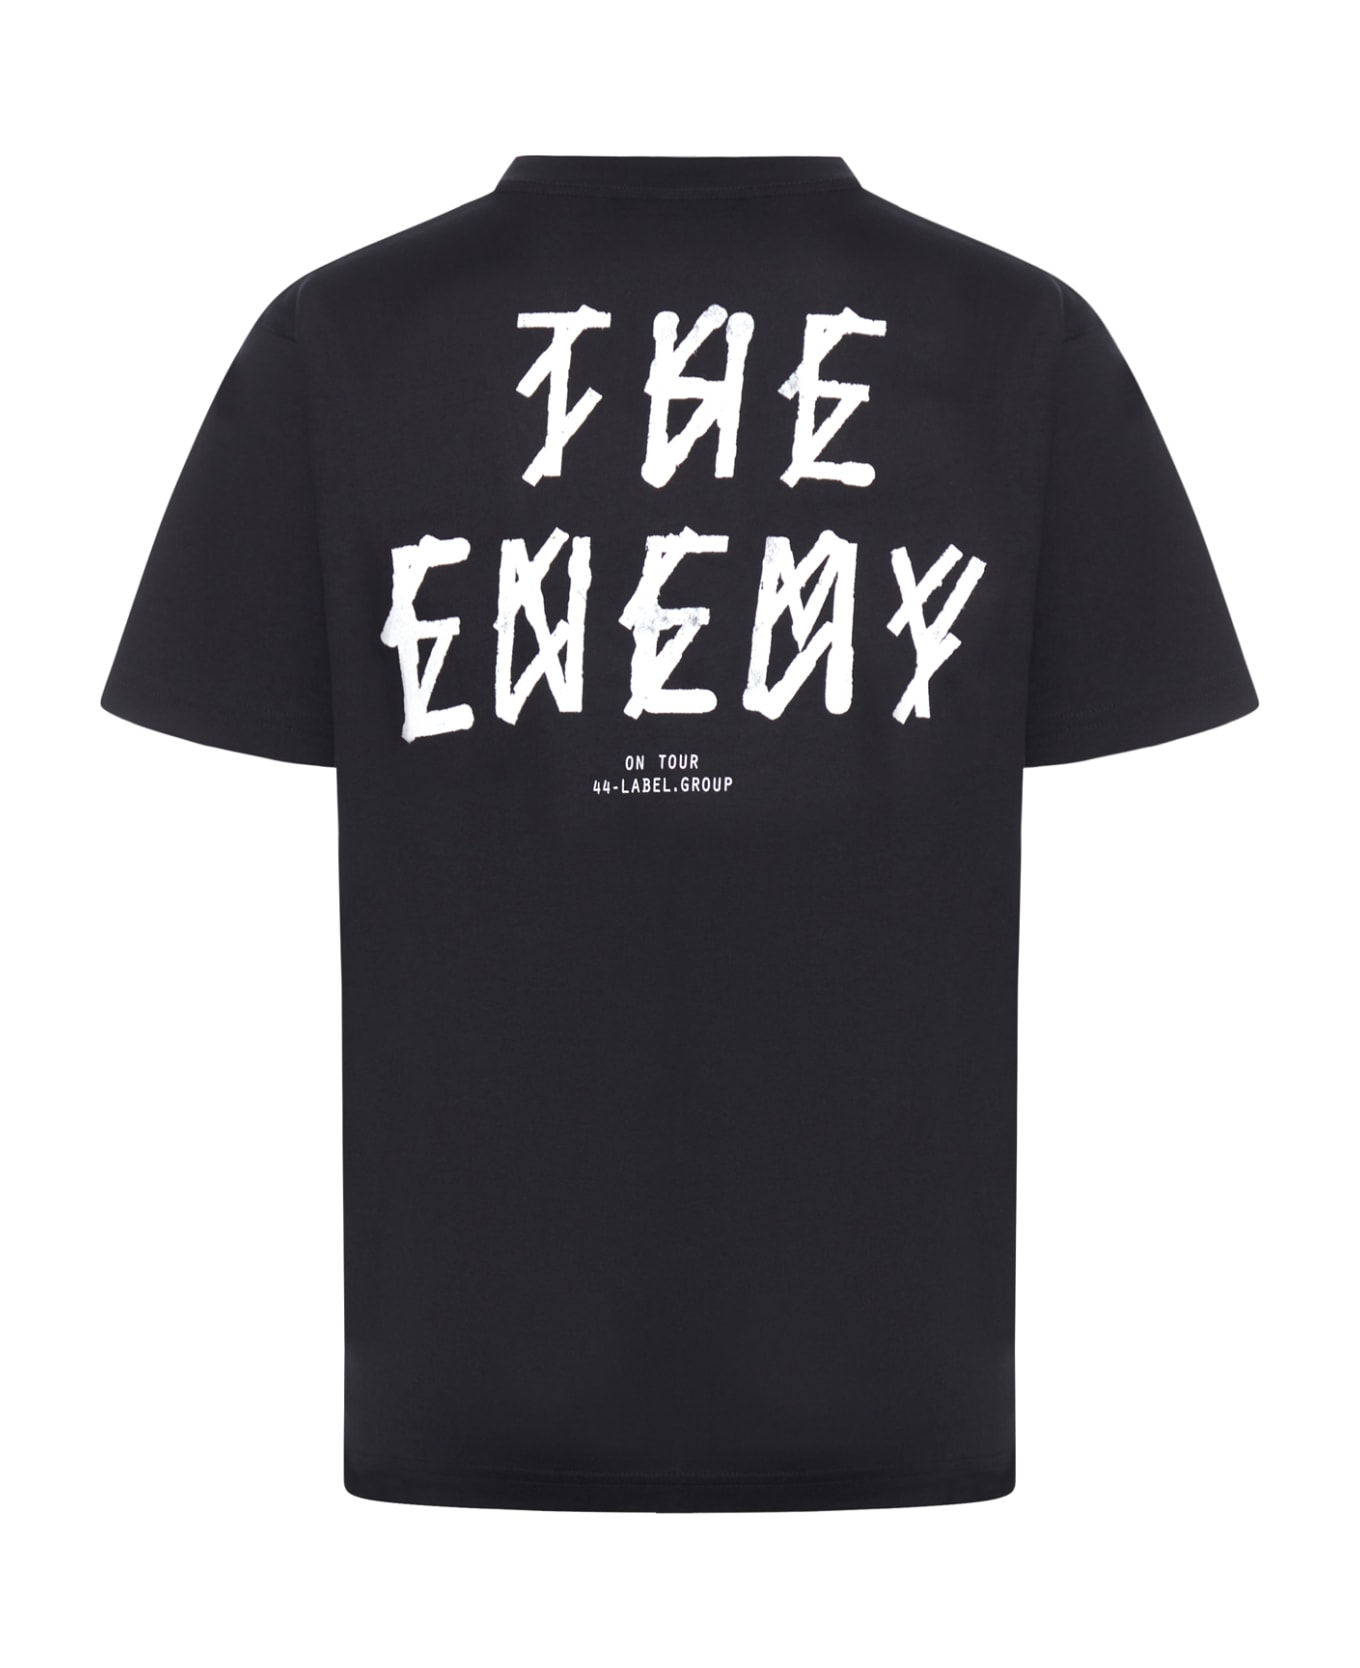 44 Label Group Enemy Tee - Black The Enemy Print